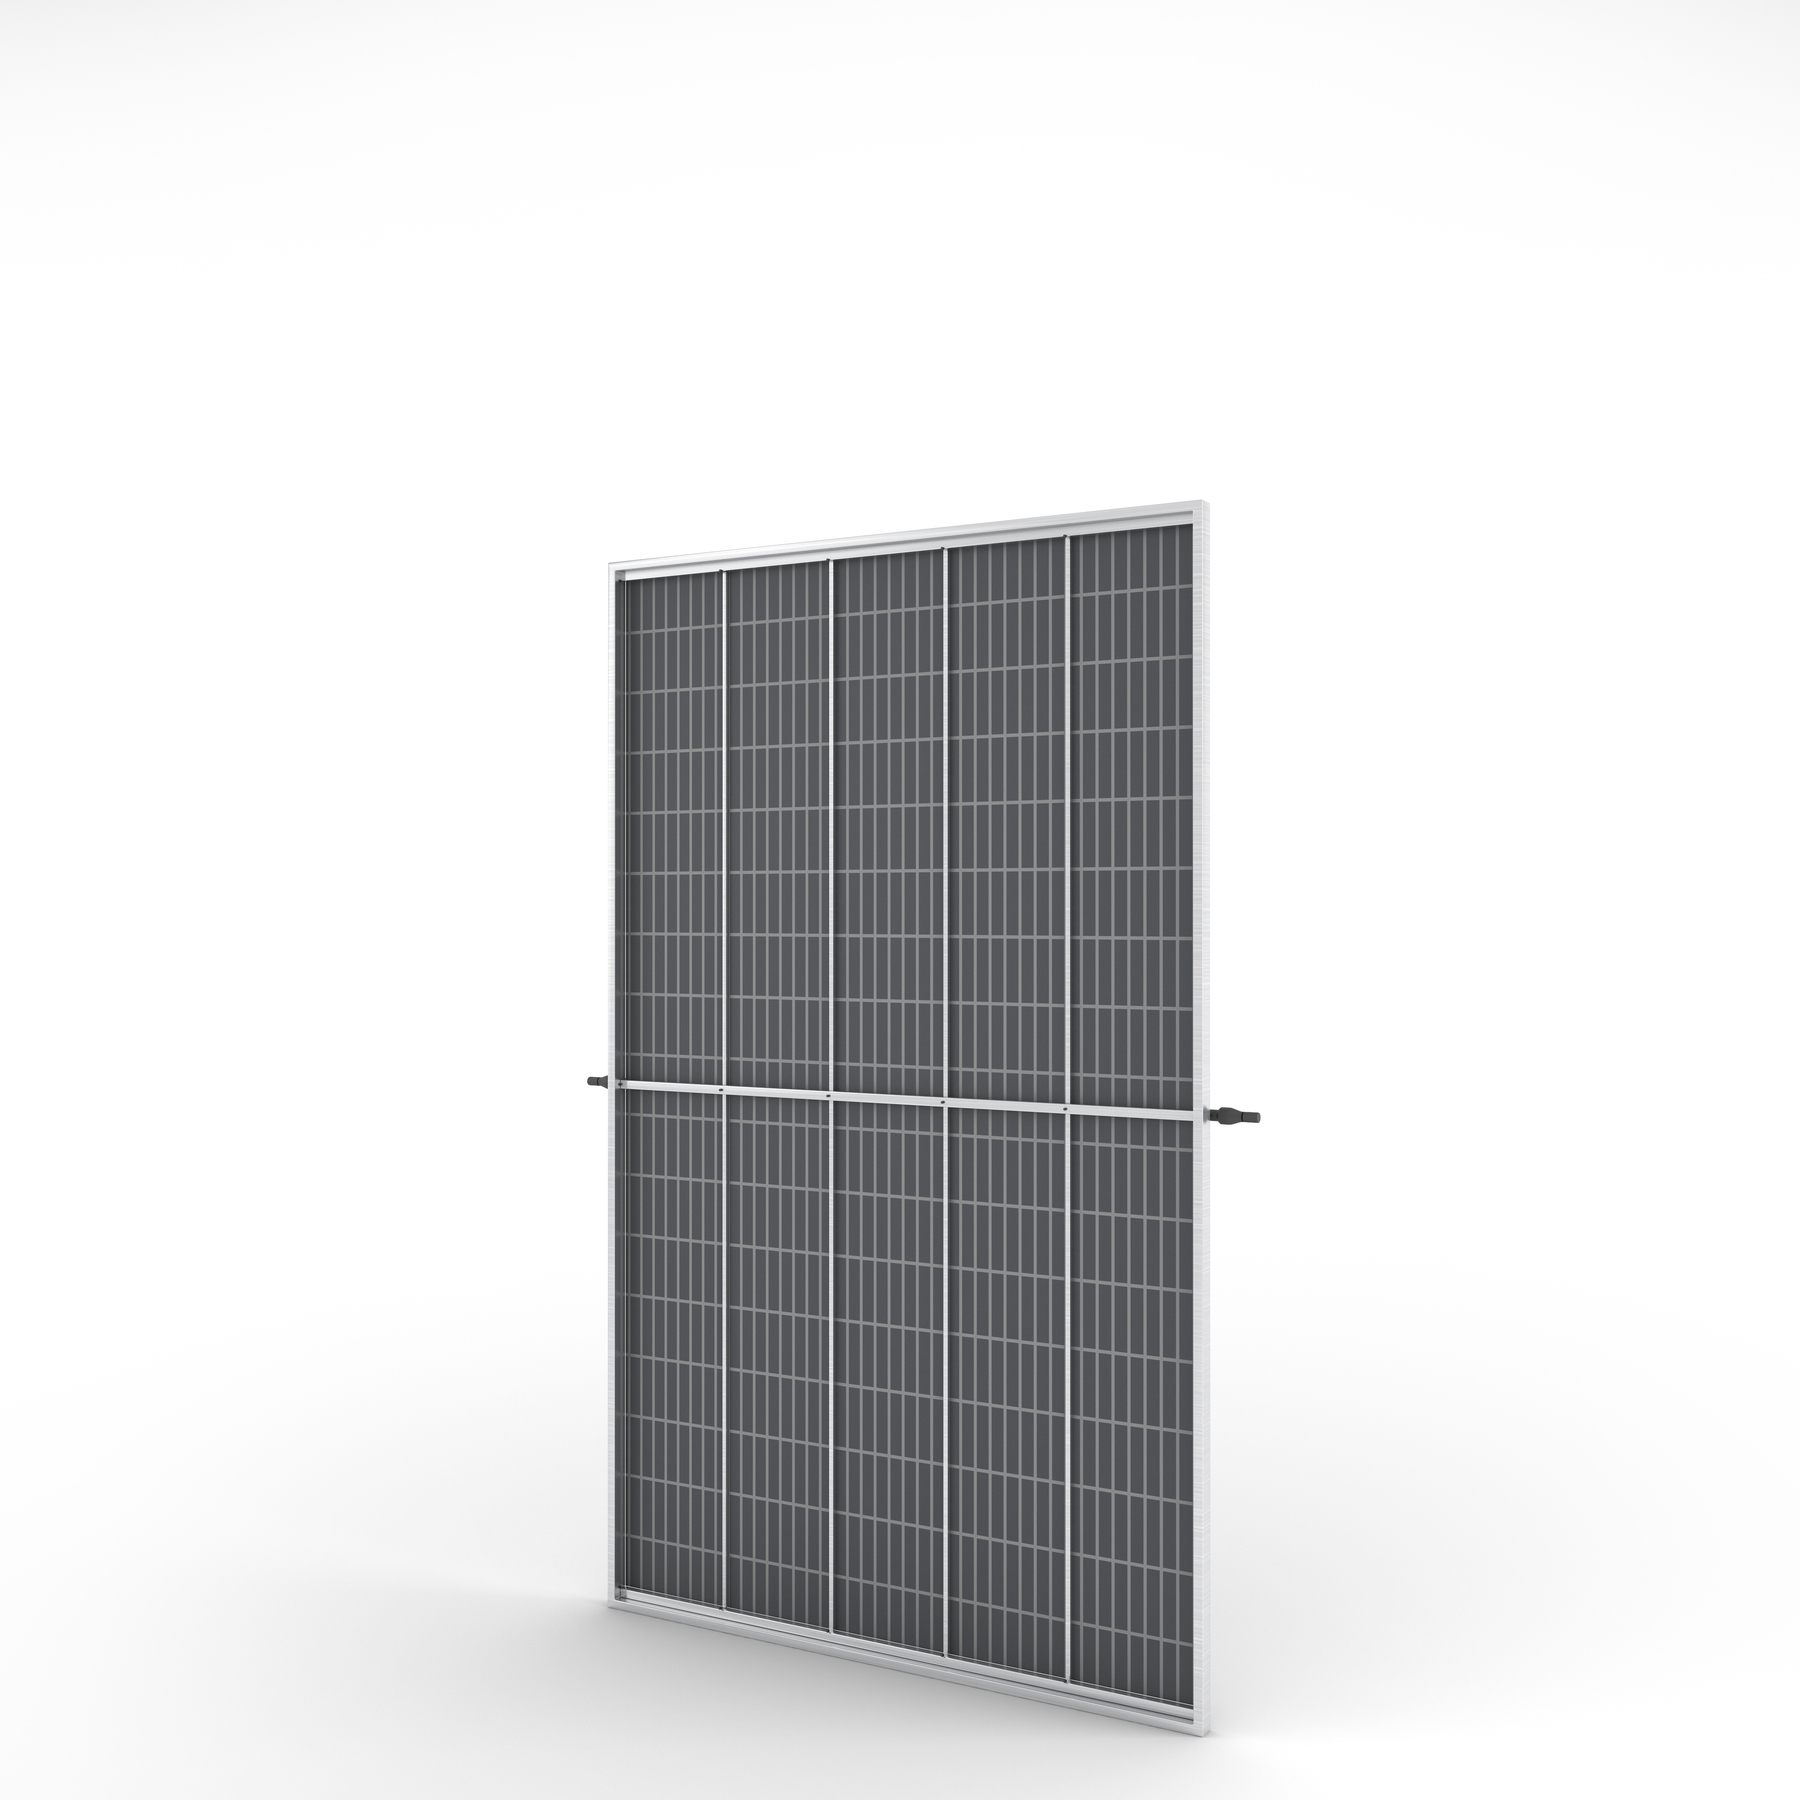 sistema fotovoltaico: kit de placa solar com 4 placas para telha